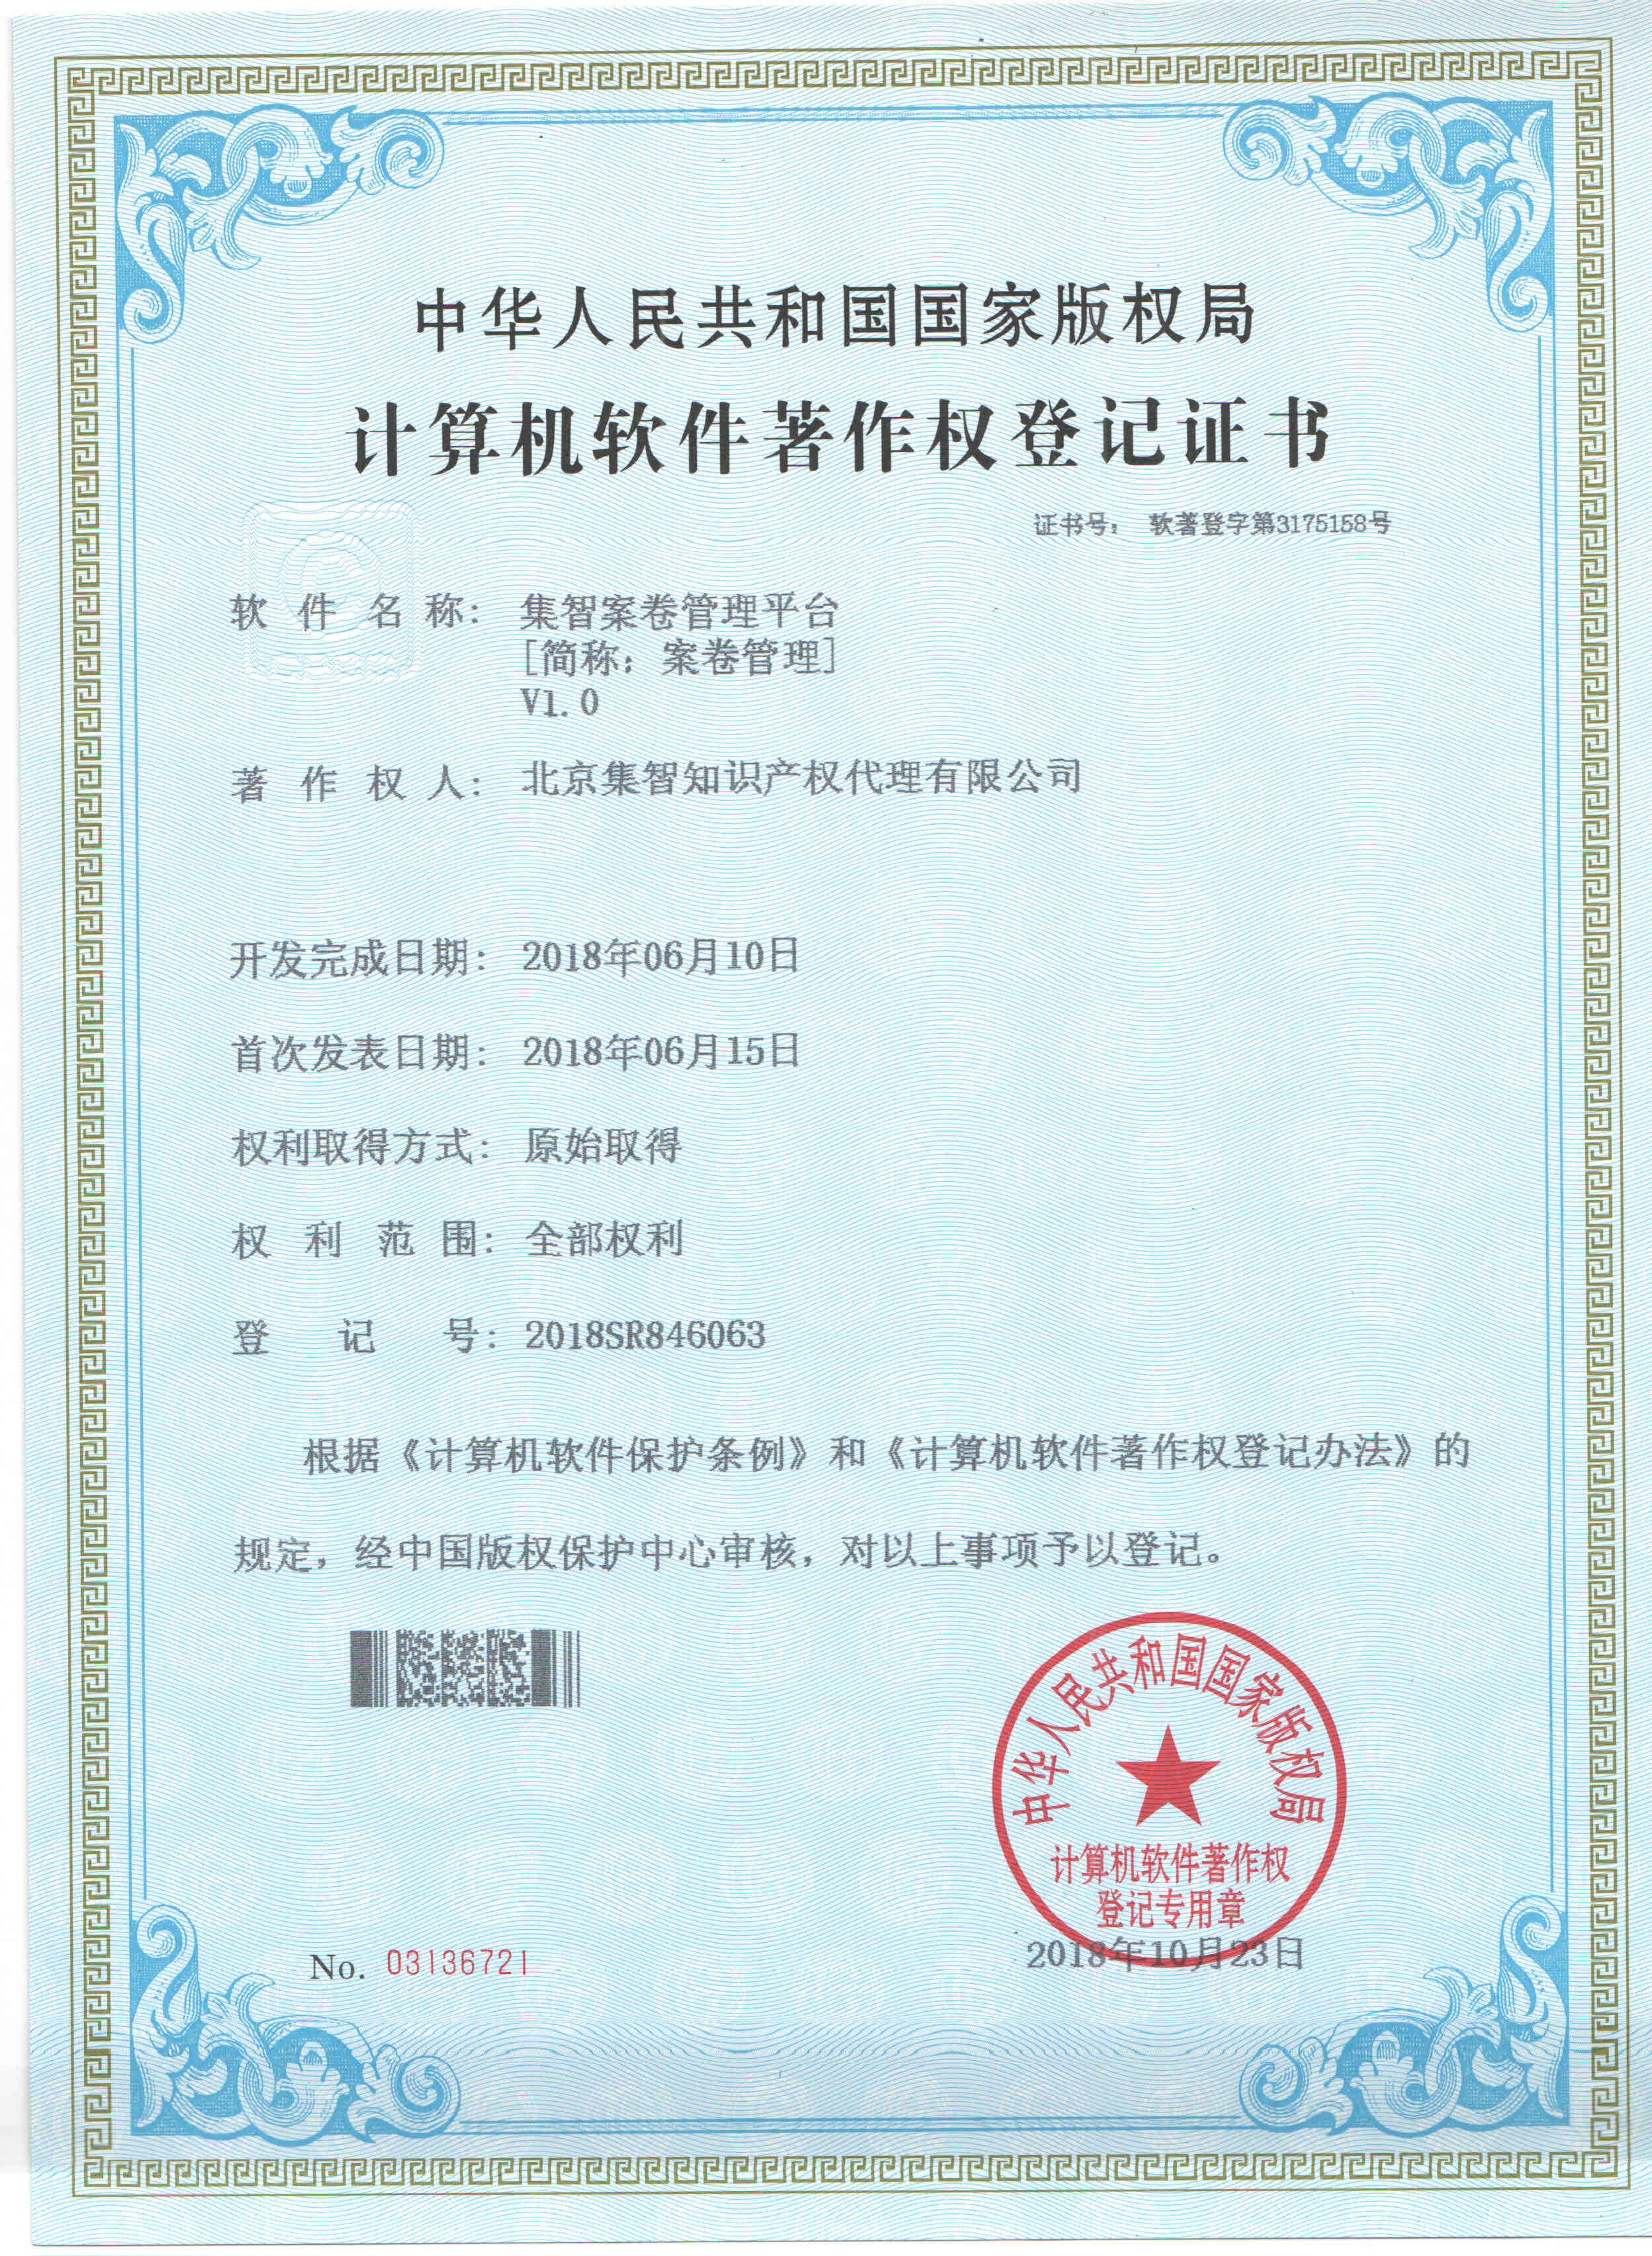 北京集智版权证书-3